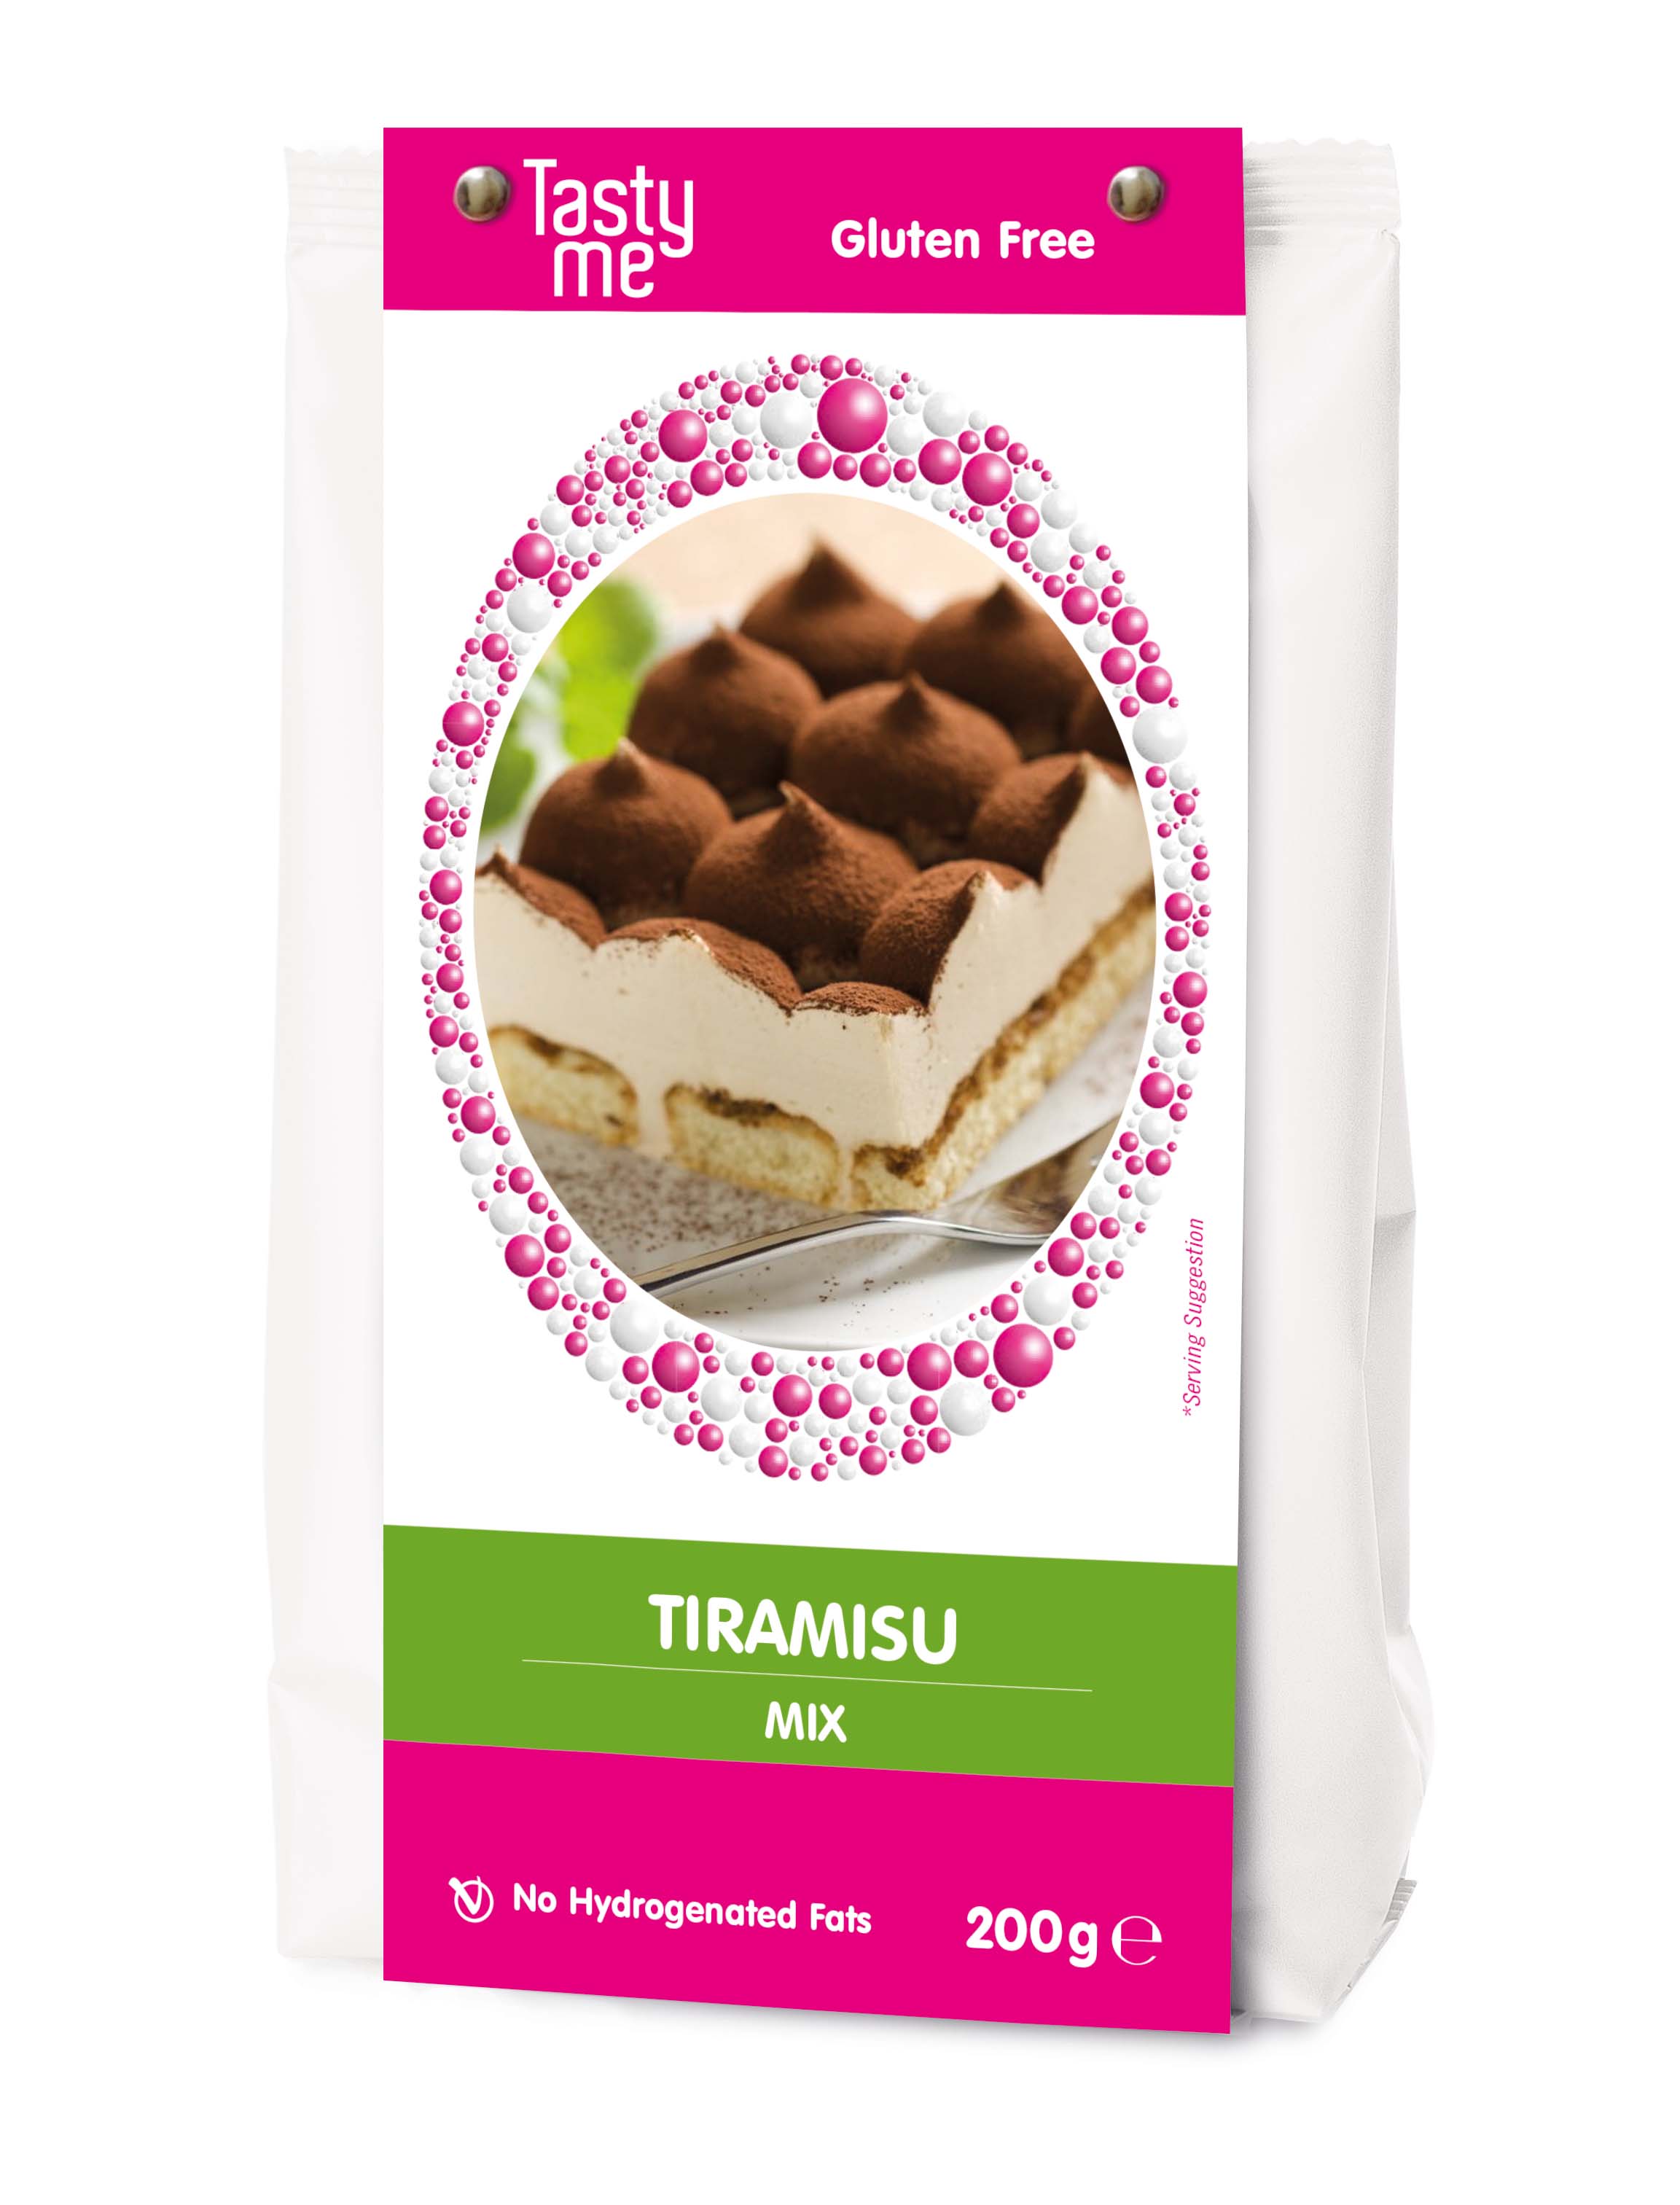 Tiramisu mix 200g - gluten-free